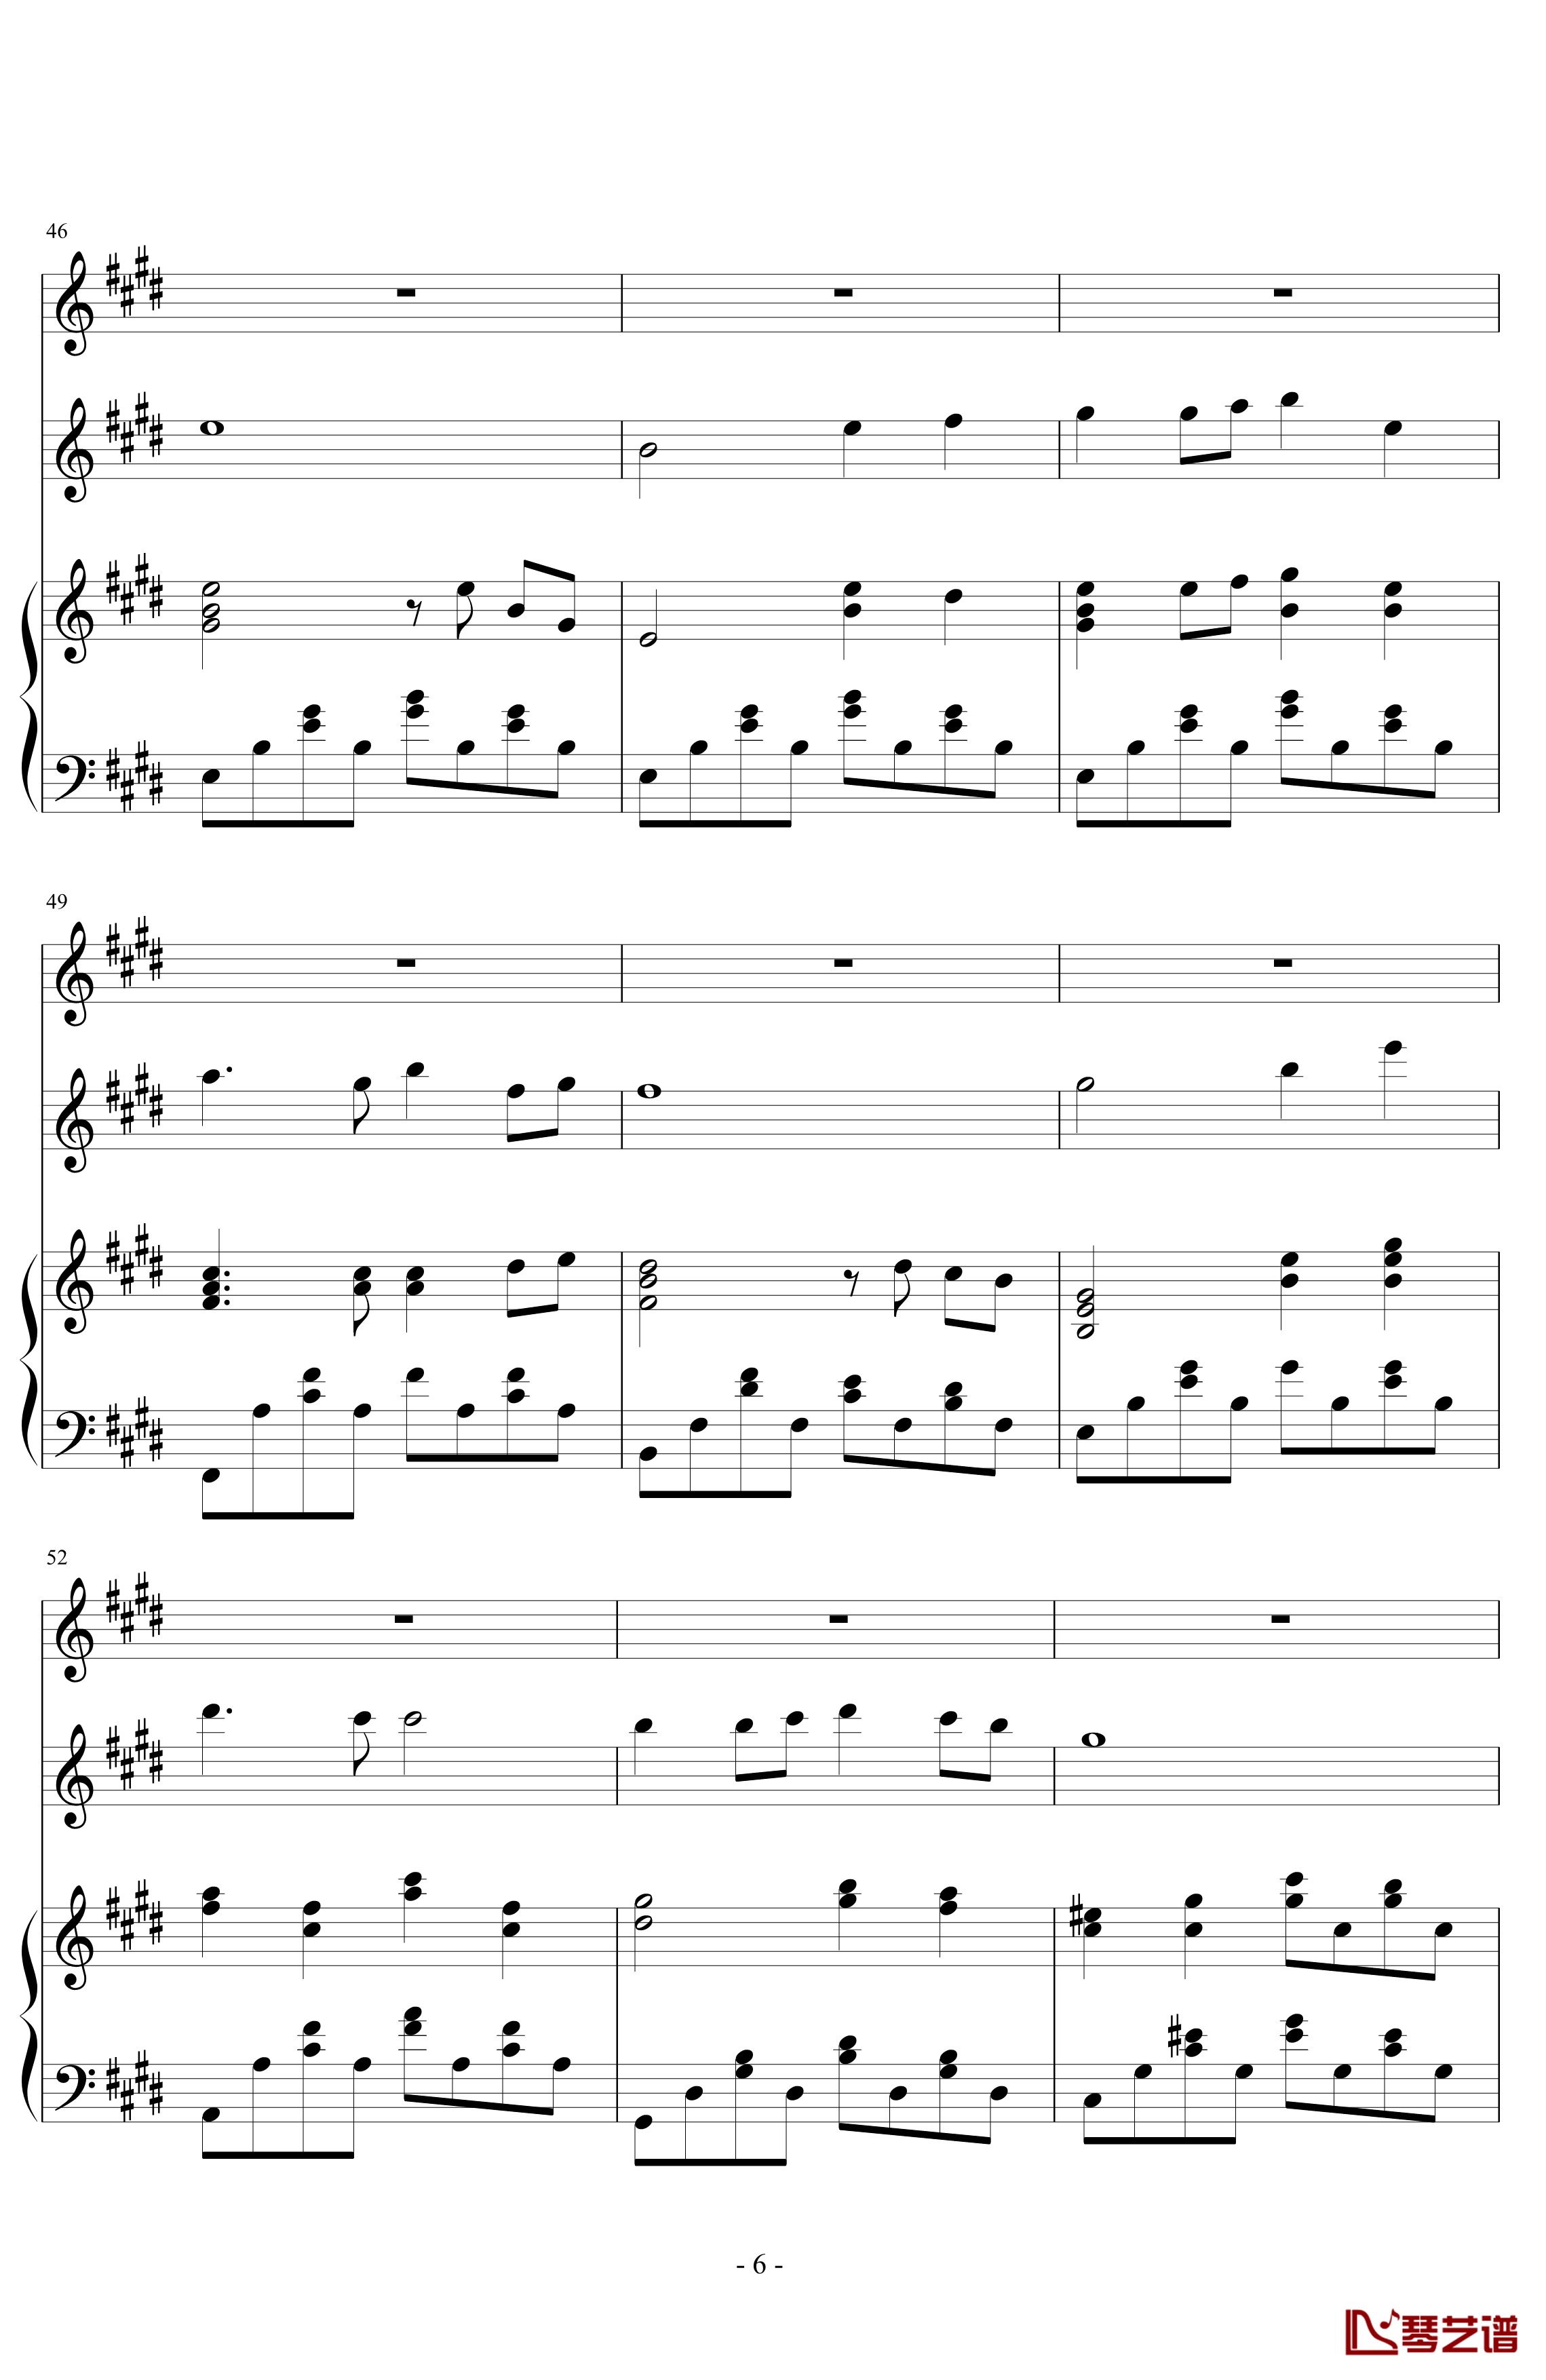 同一首歌钢琴谱-小型伴奏谱兼演奏谱-毛阿敏6